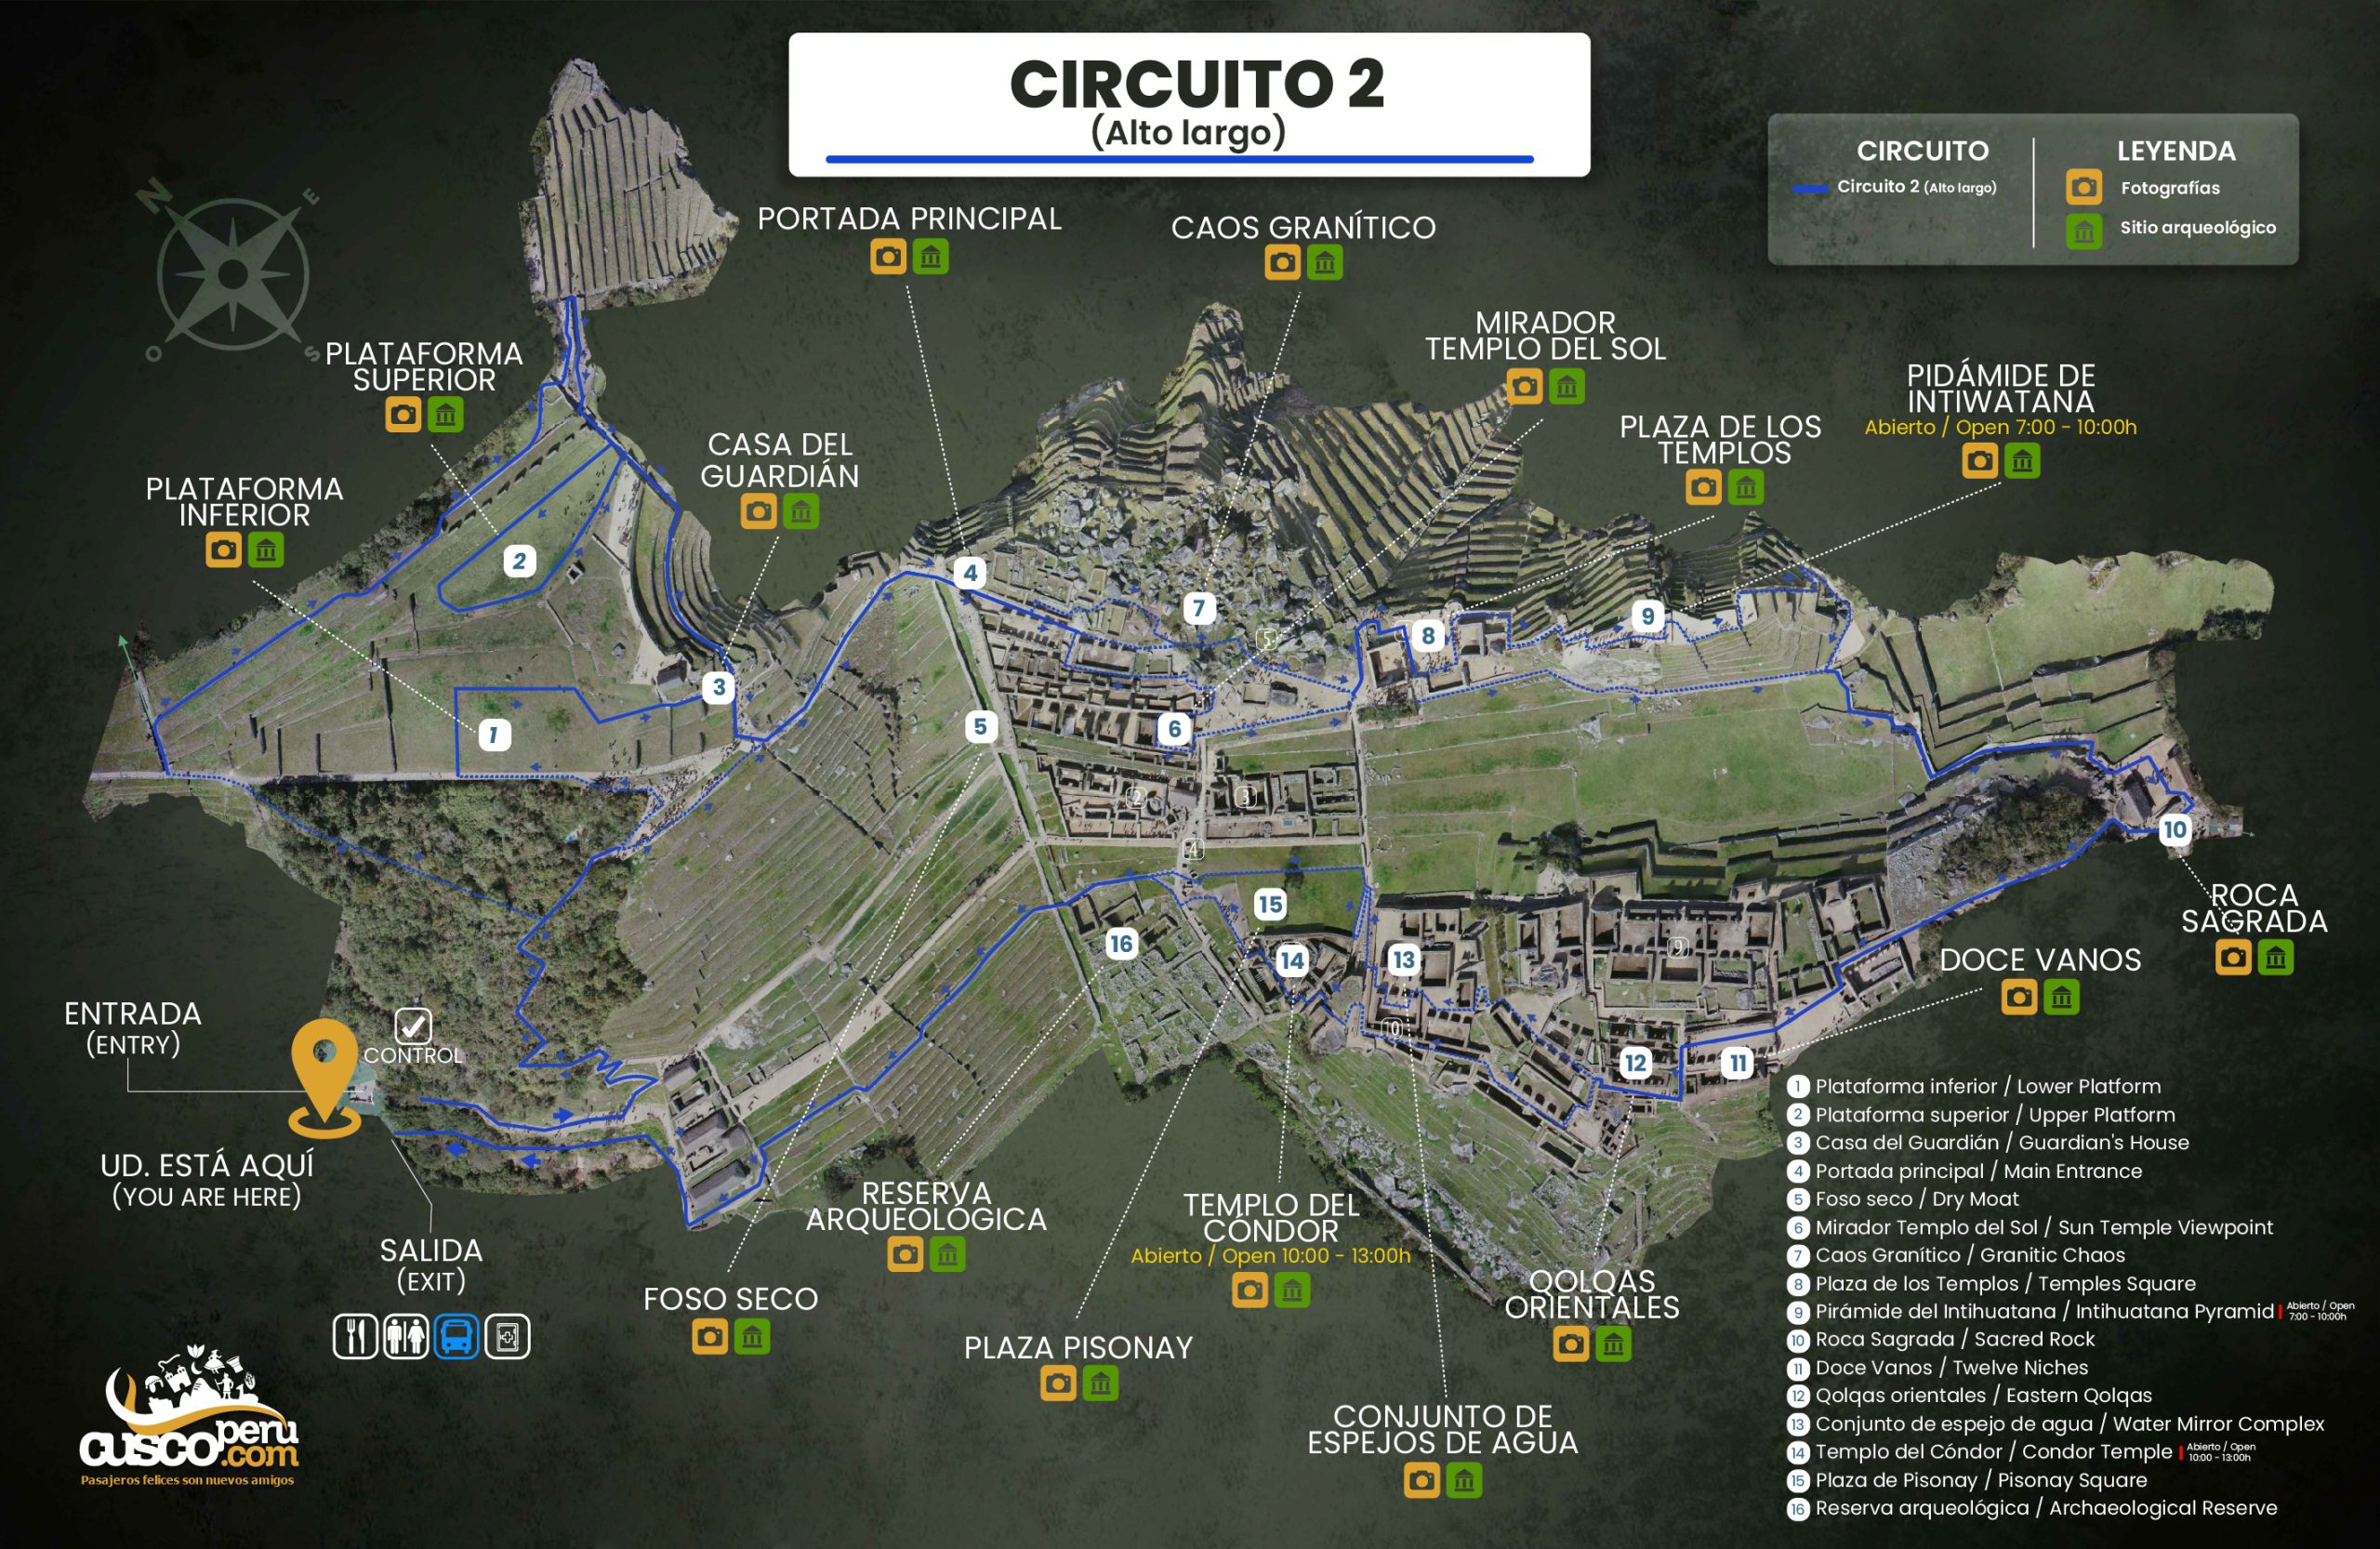 Circuit 2 Machu Picchu. Source: Cusco Peru.com